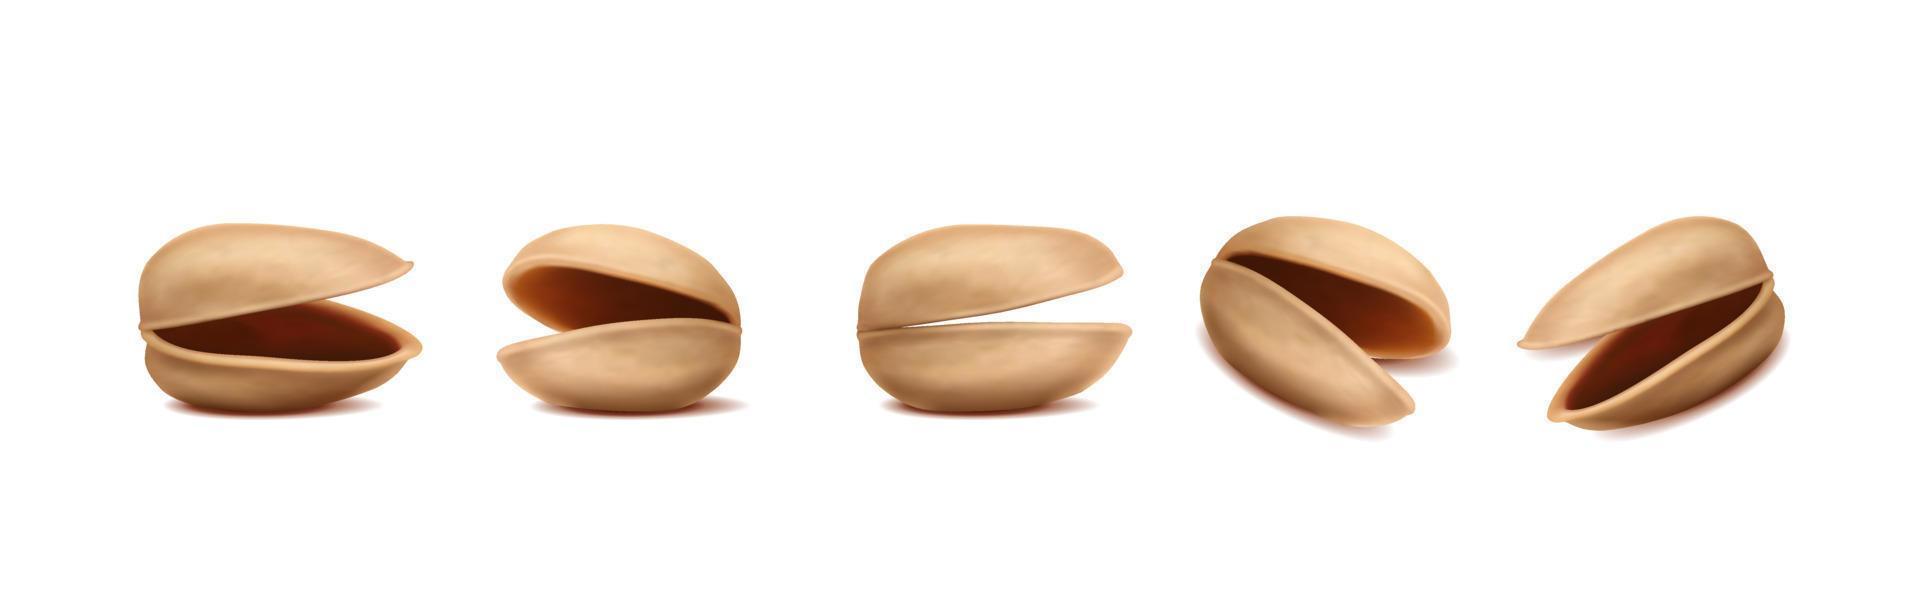 icône de vecteur réaliste 3D. pistaches décortiquées de différentes formes.